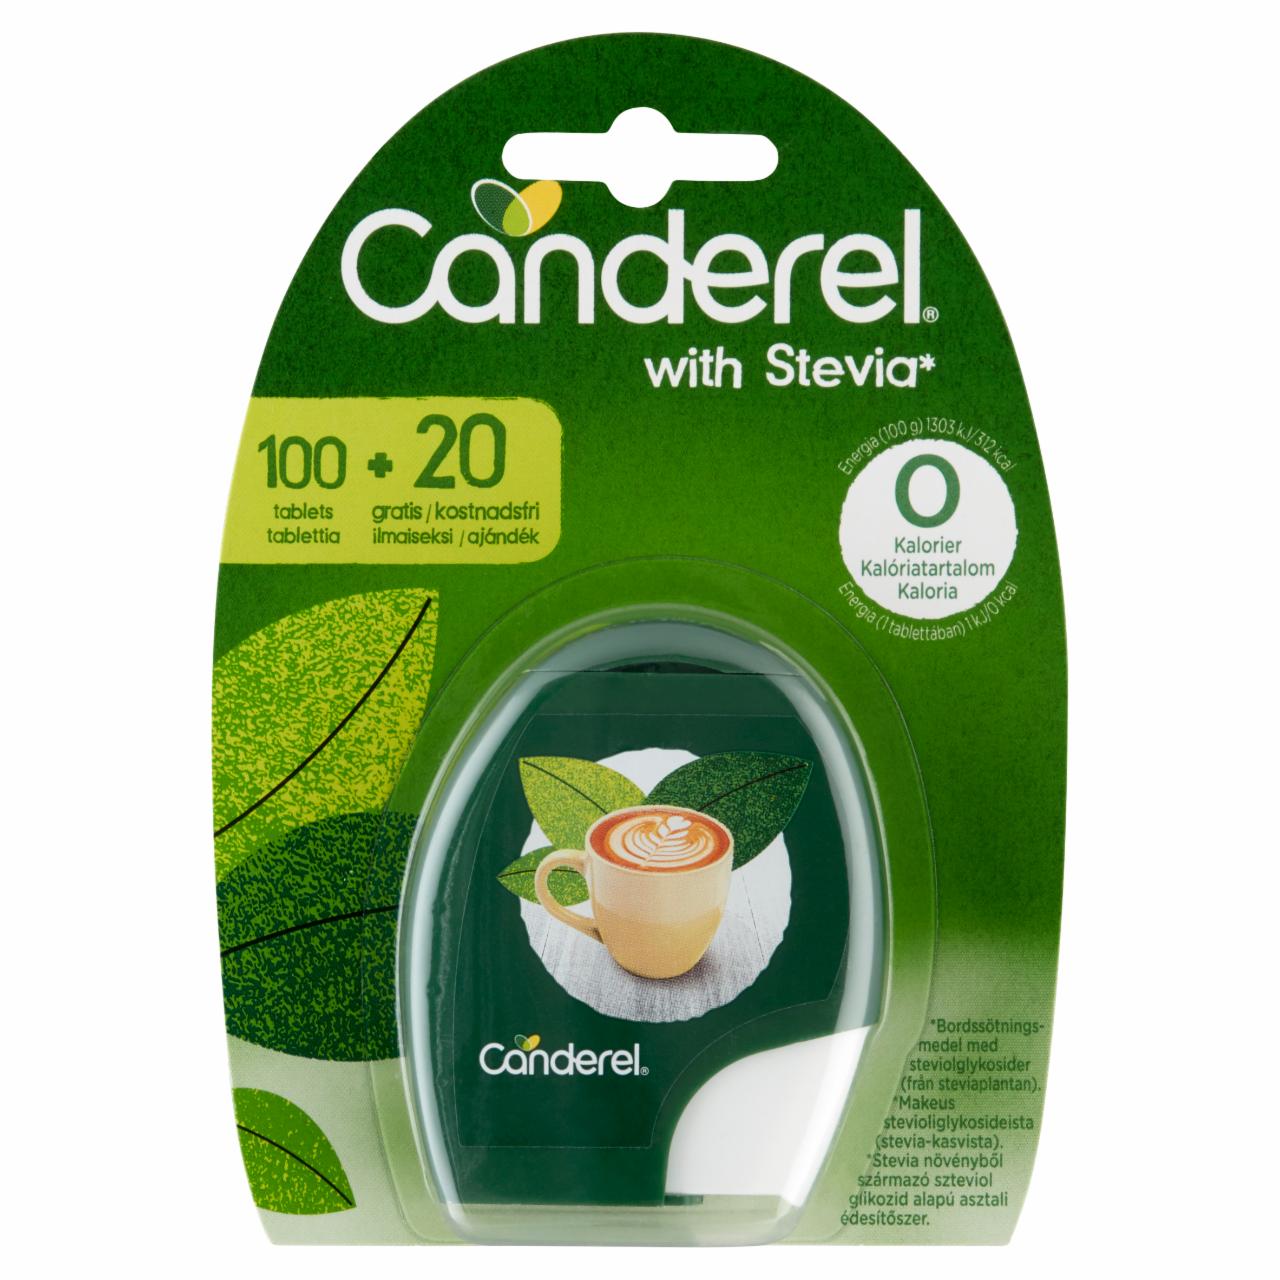 Képek - Canderel stevia növényből származó szteviol glikozid alapú asztali édesítőszer 120 db 10,2 g